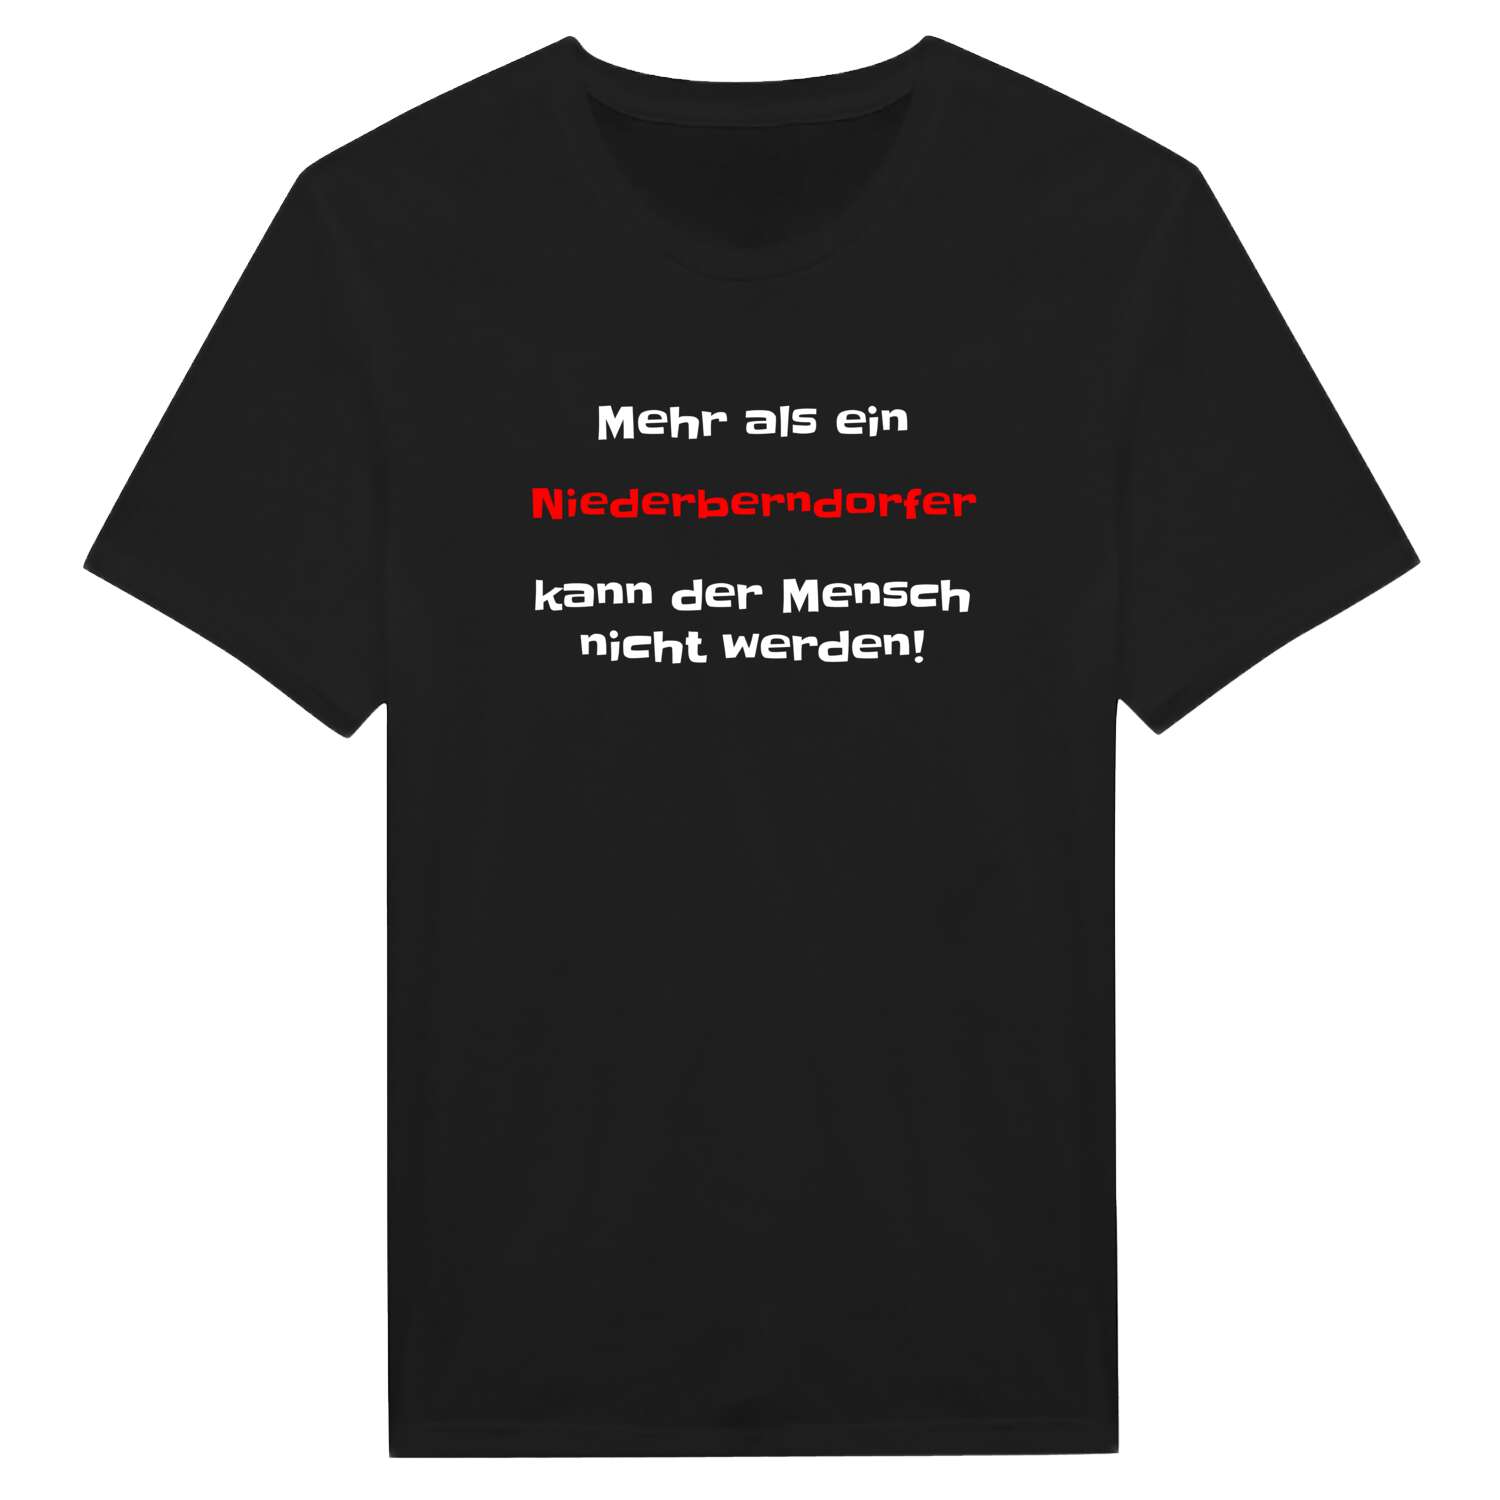 Niederberndorf T-Shirt »Mehr als ein«